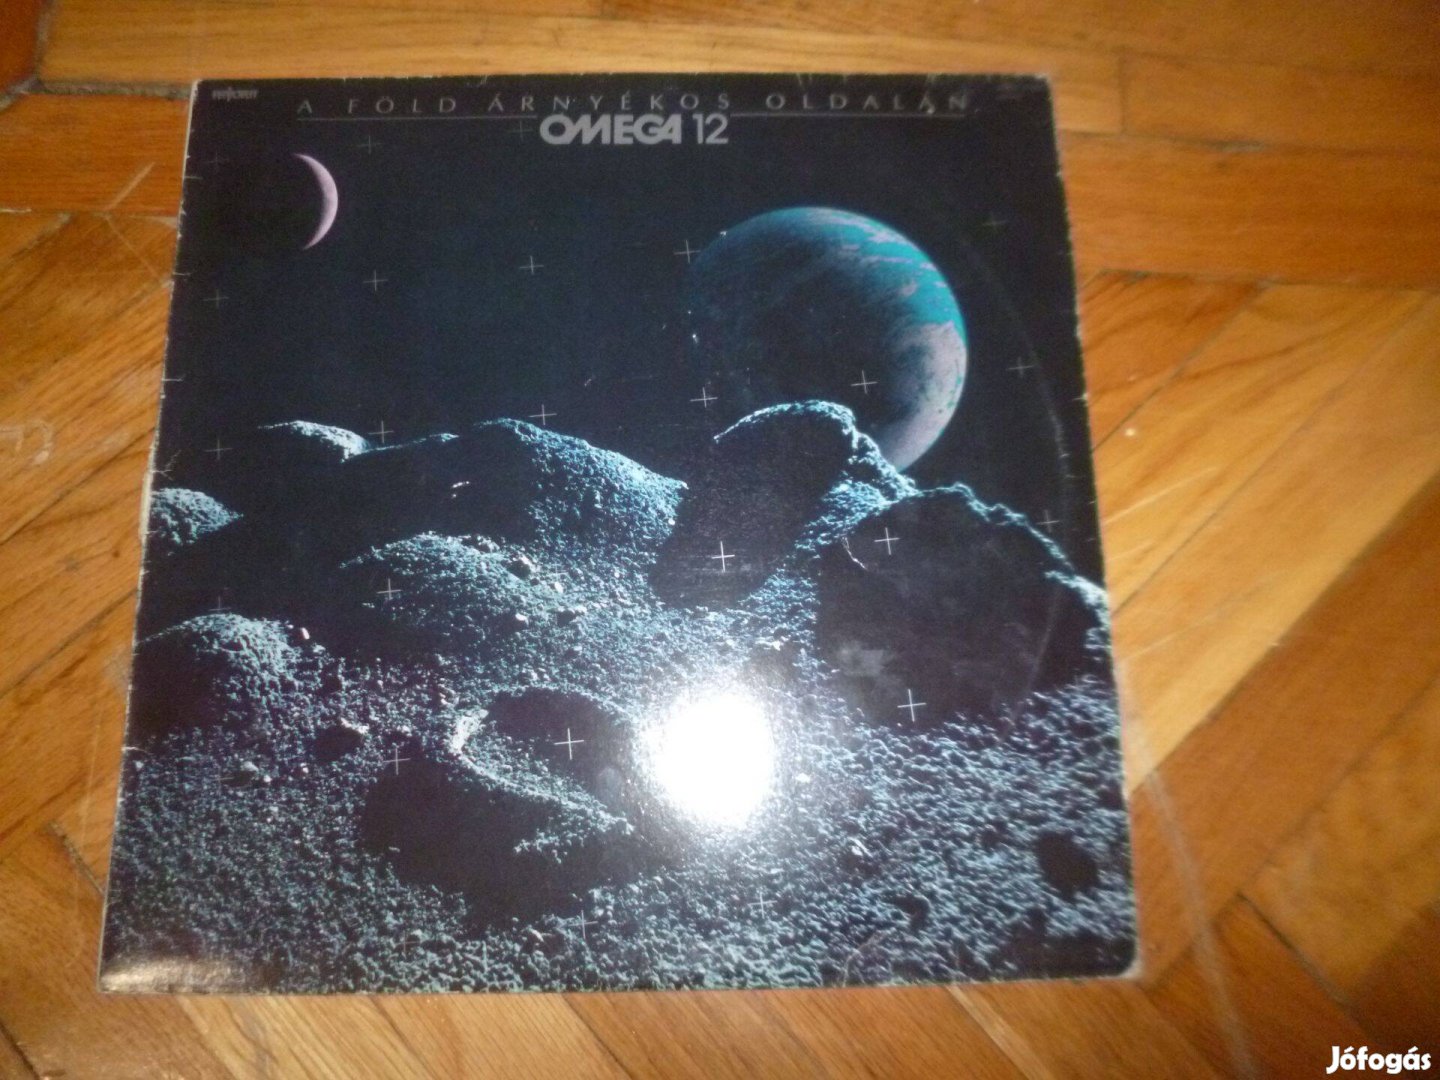 Omega bakelit hanglemez a föld árnyékos oldalán 1986